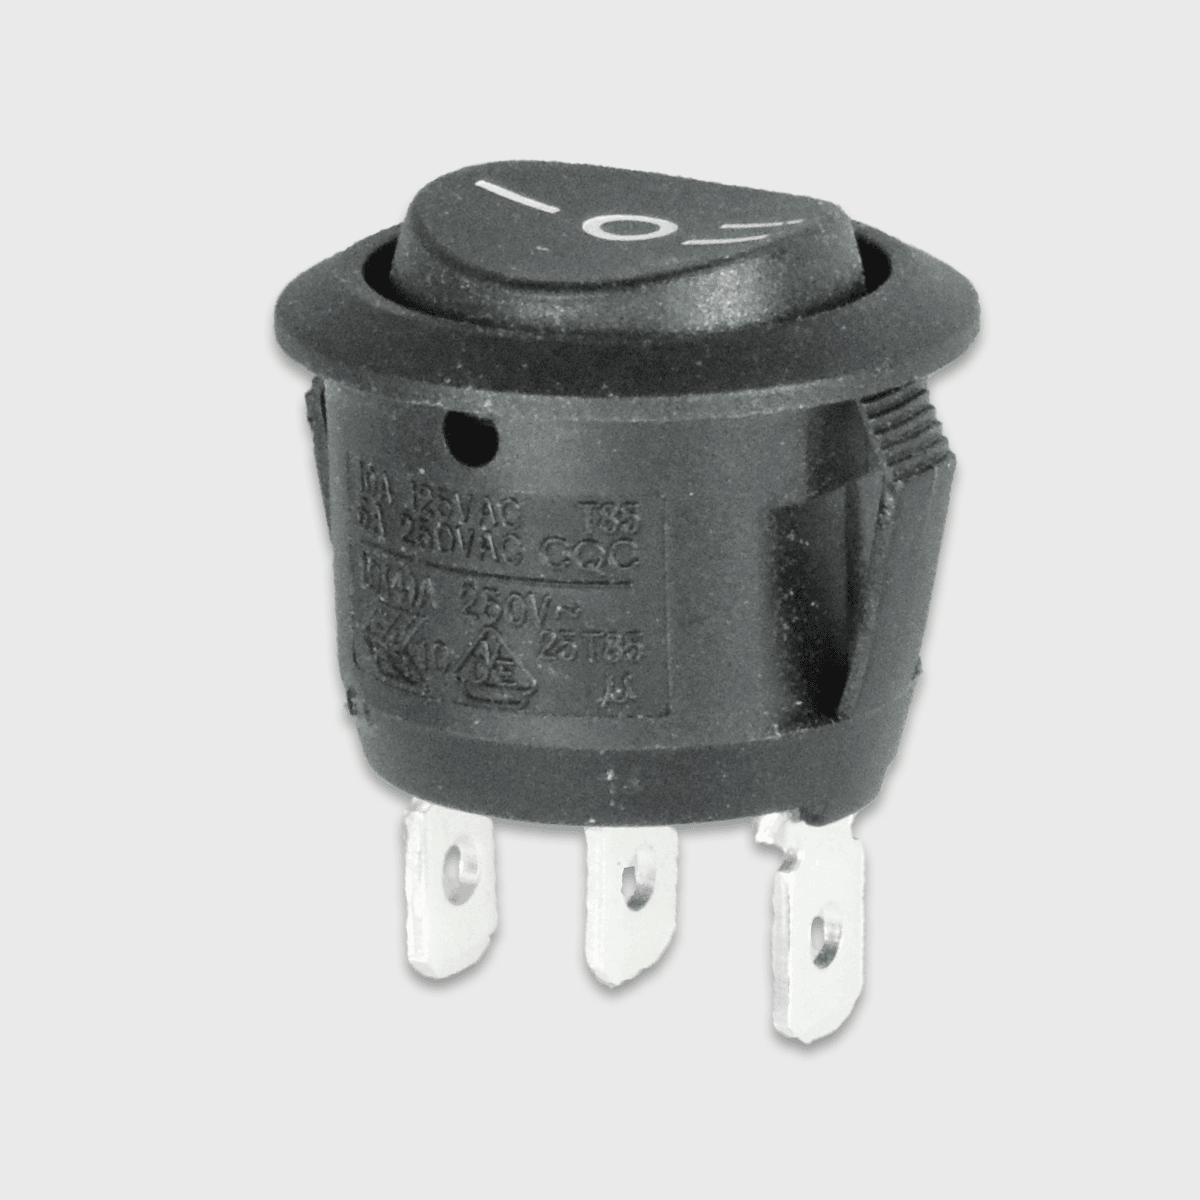 12V Einbauschalter, rund, schwarz, II-0-I